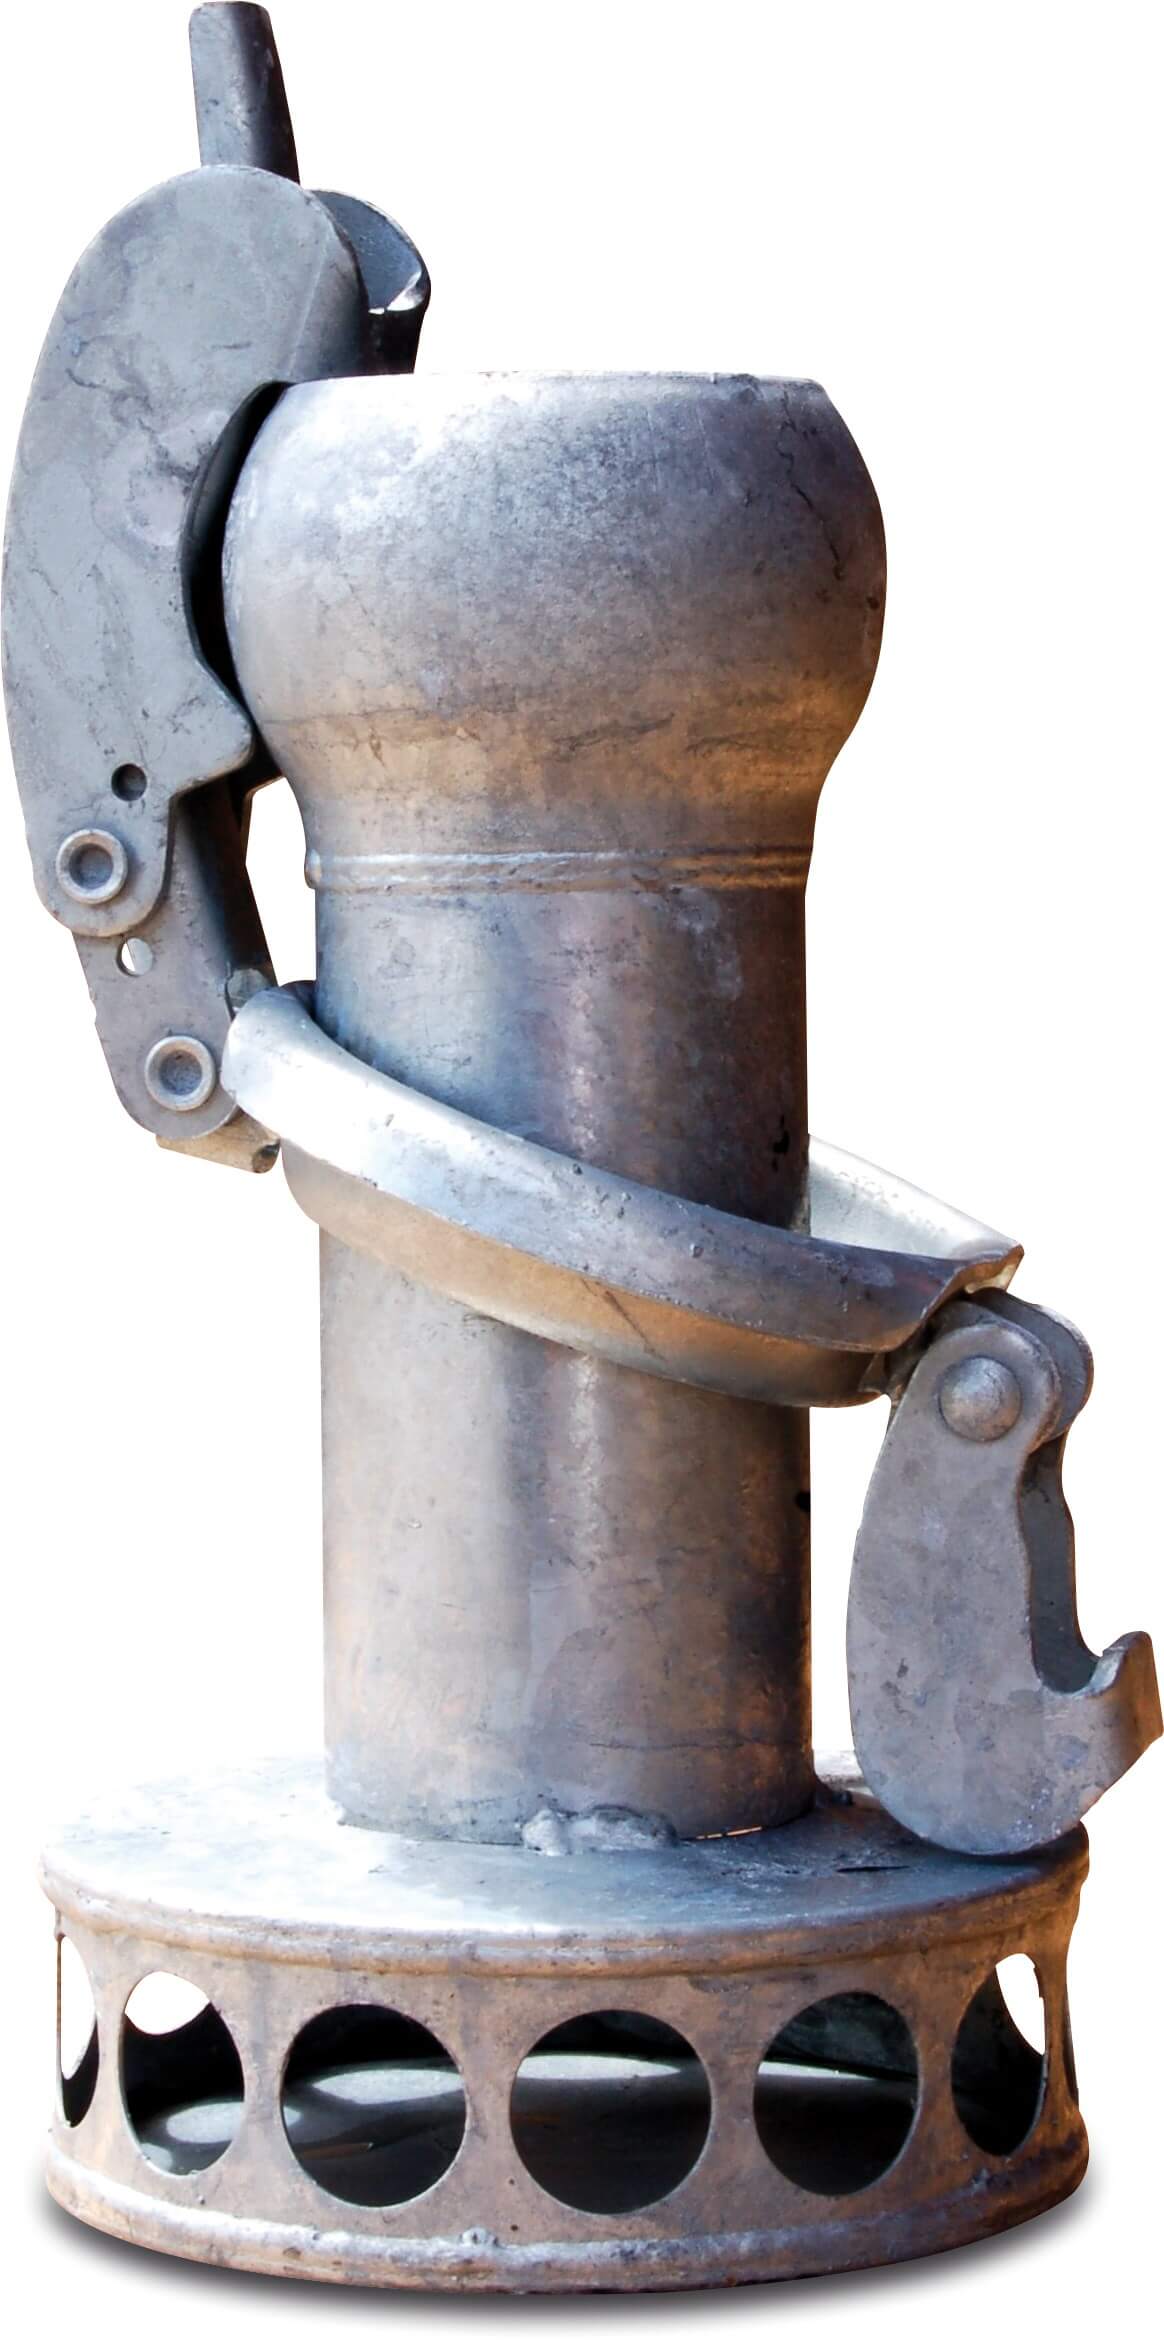 Zuigkorf staal gegalvaniseerd 108 mm M-deel Bauer